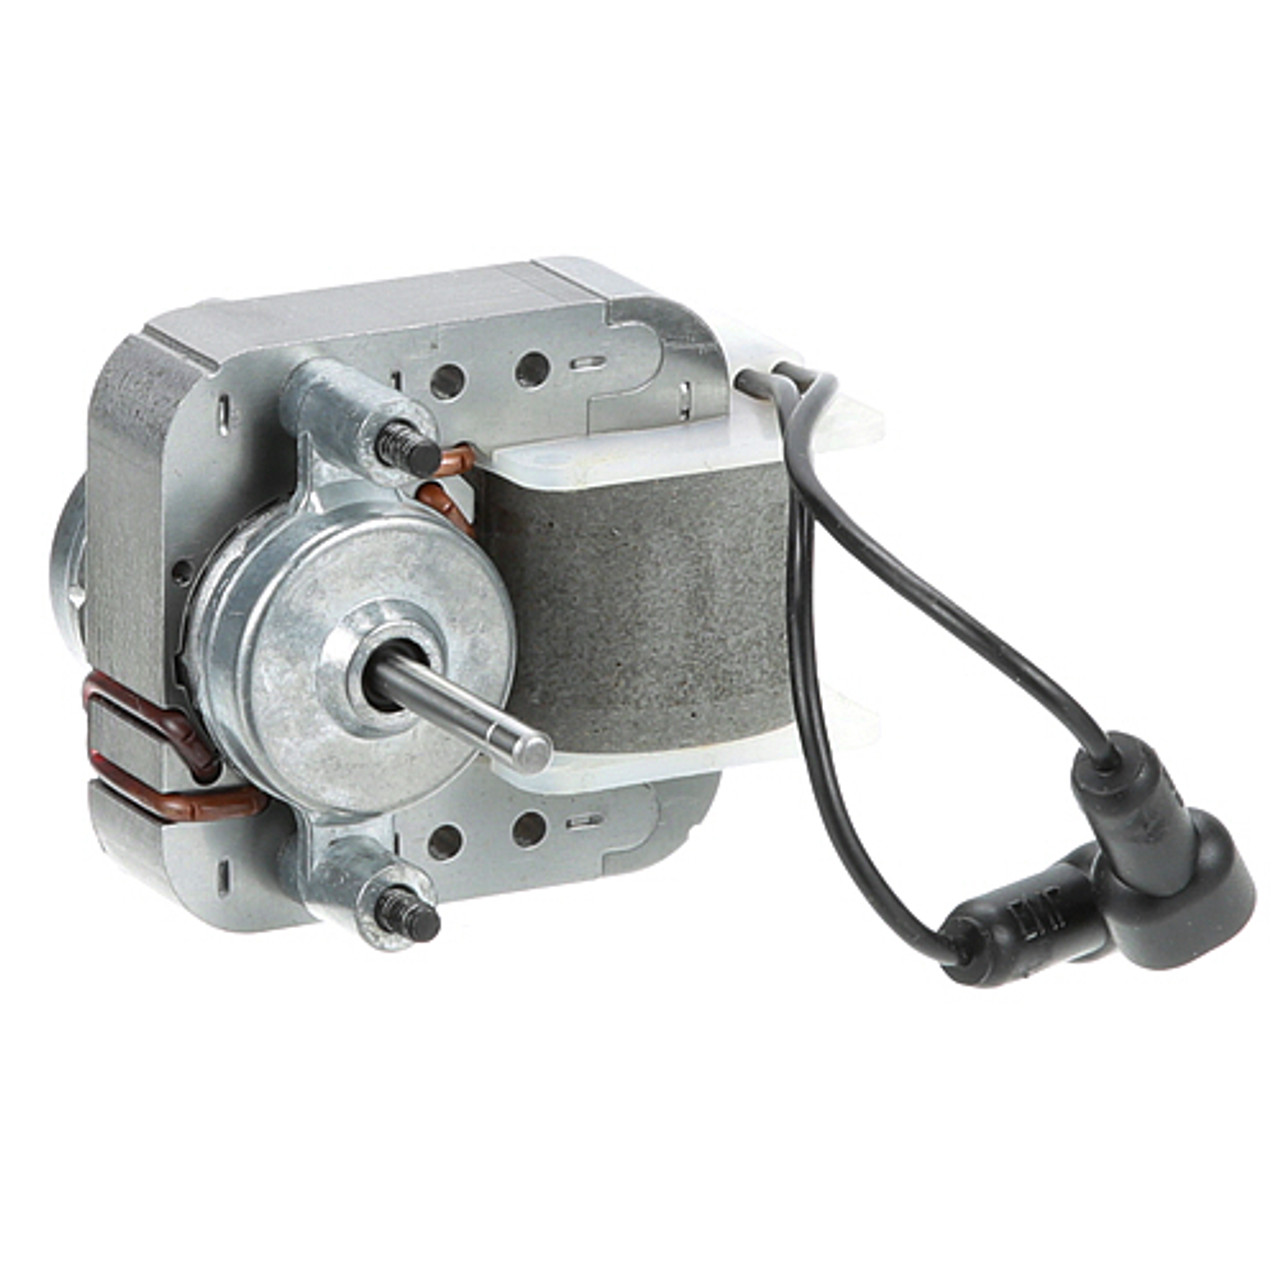 Motor,Fan (115V) - Replacement Part For Sertek Llc SRK7000048-25300701